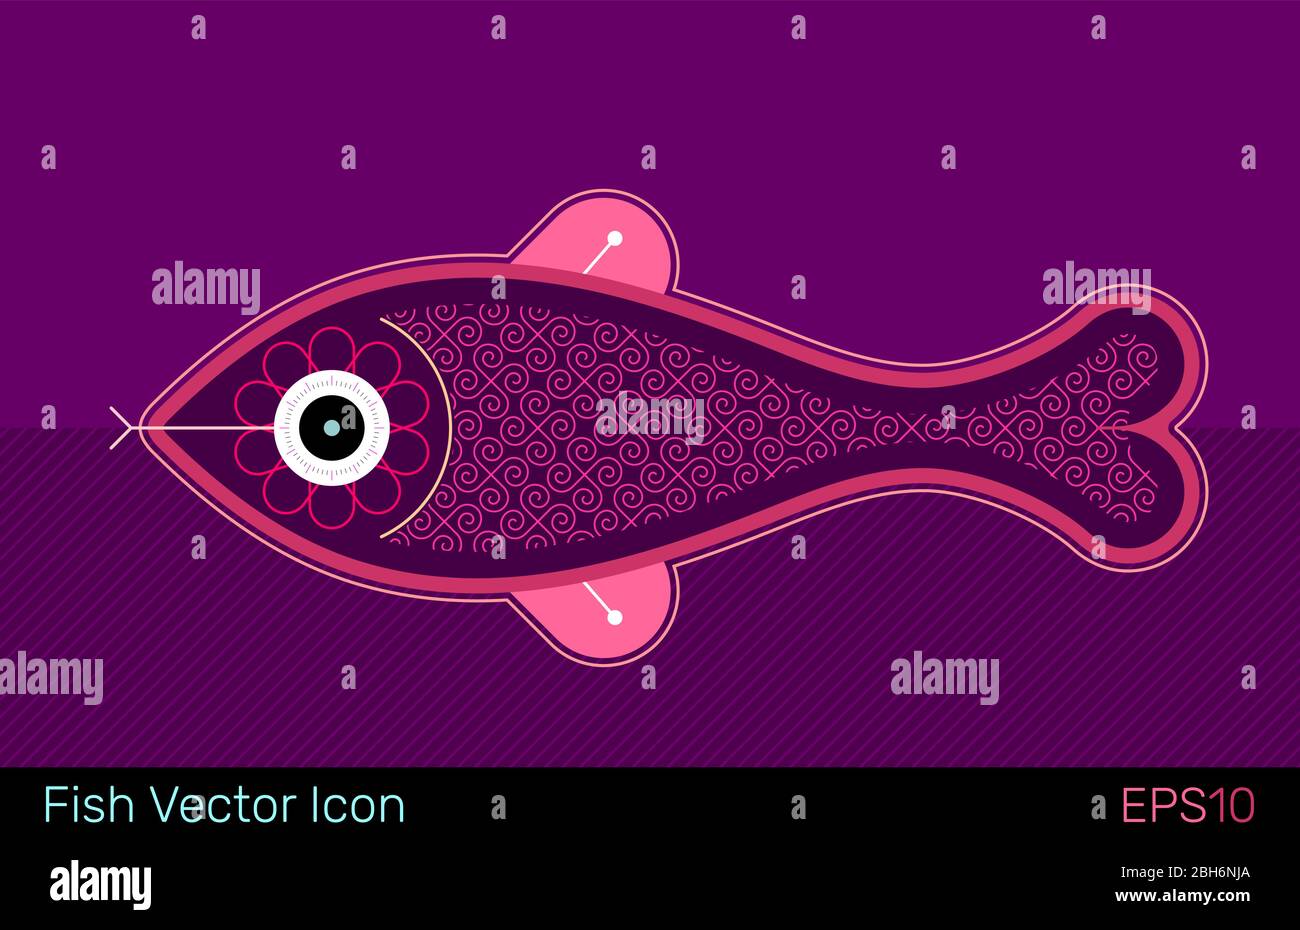 Dekorative Abbildung eines Fisch, Vektor-Print-Design. Stock Vektor